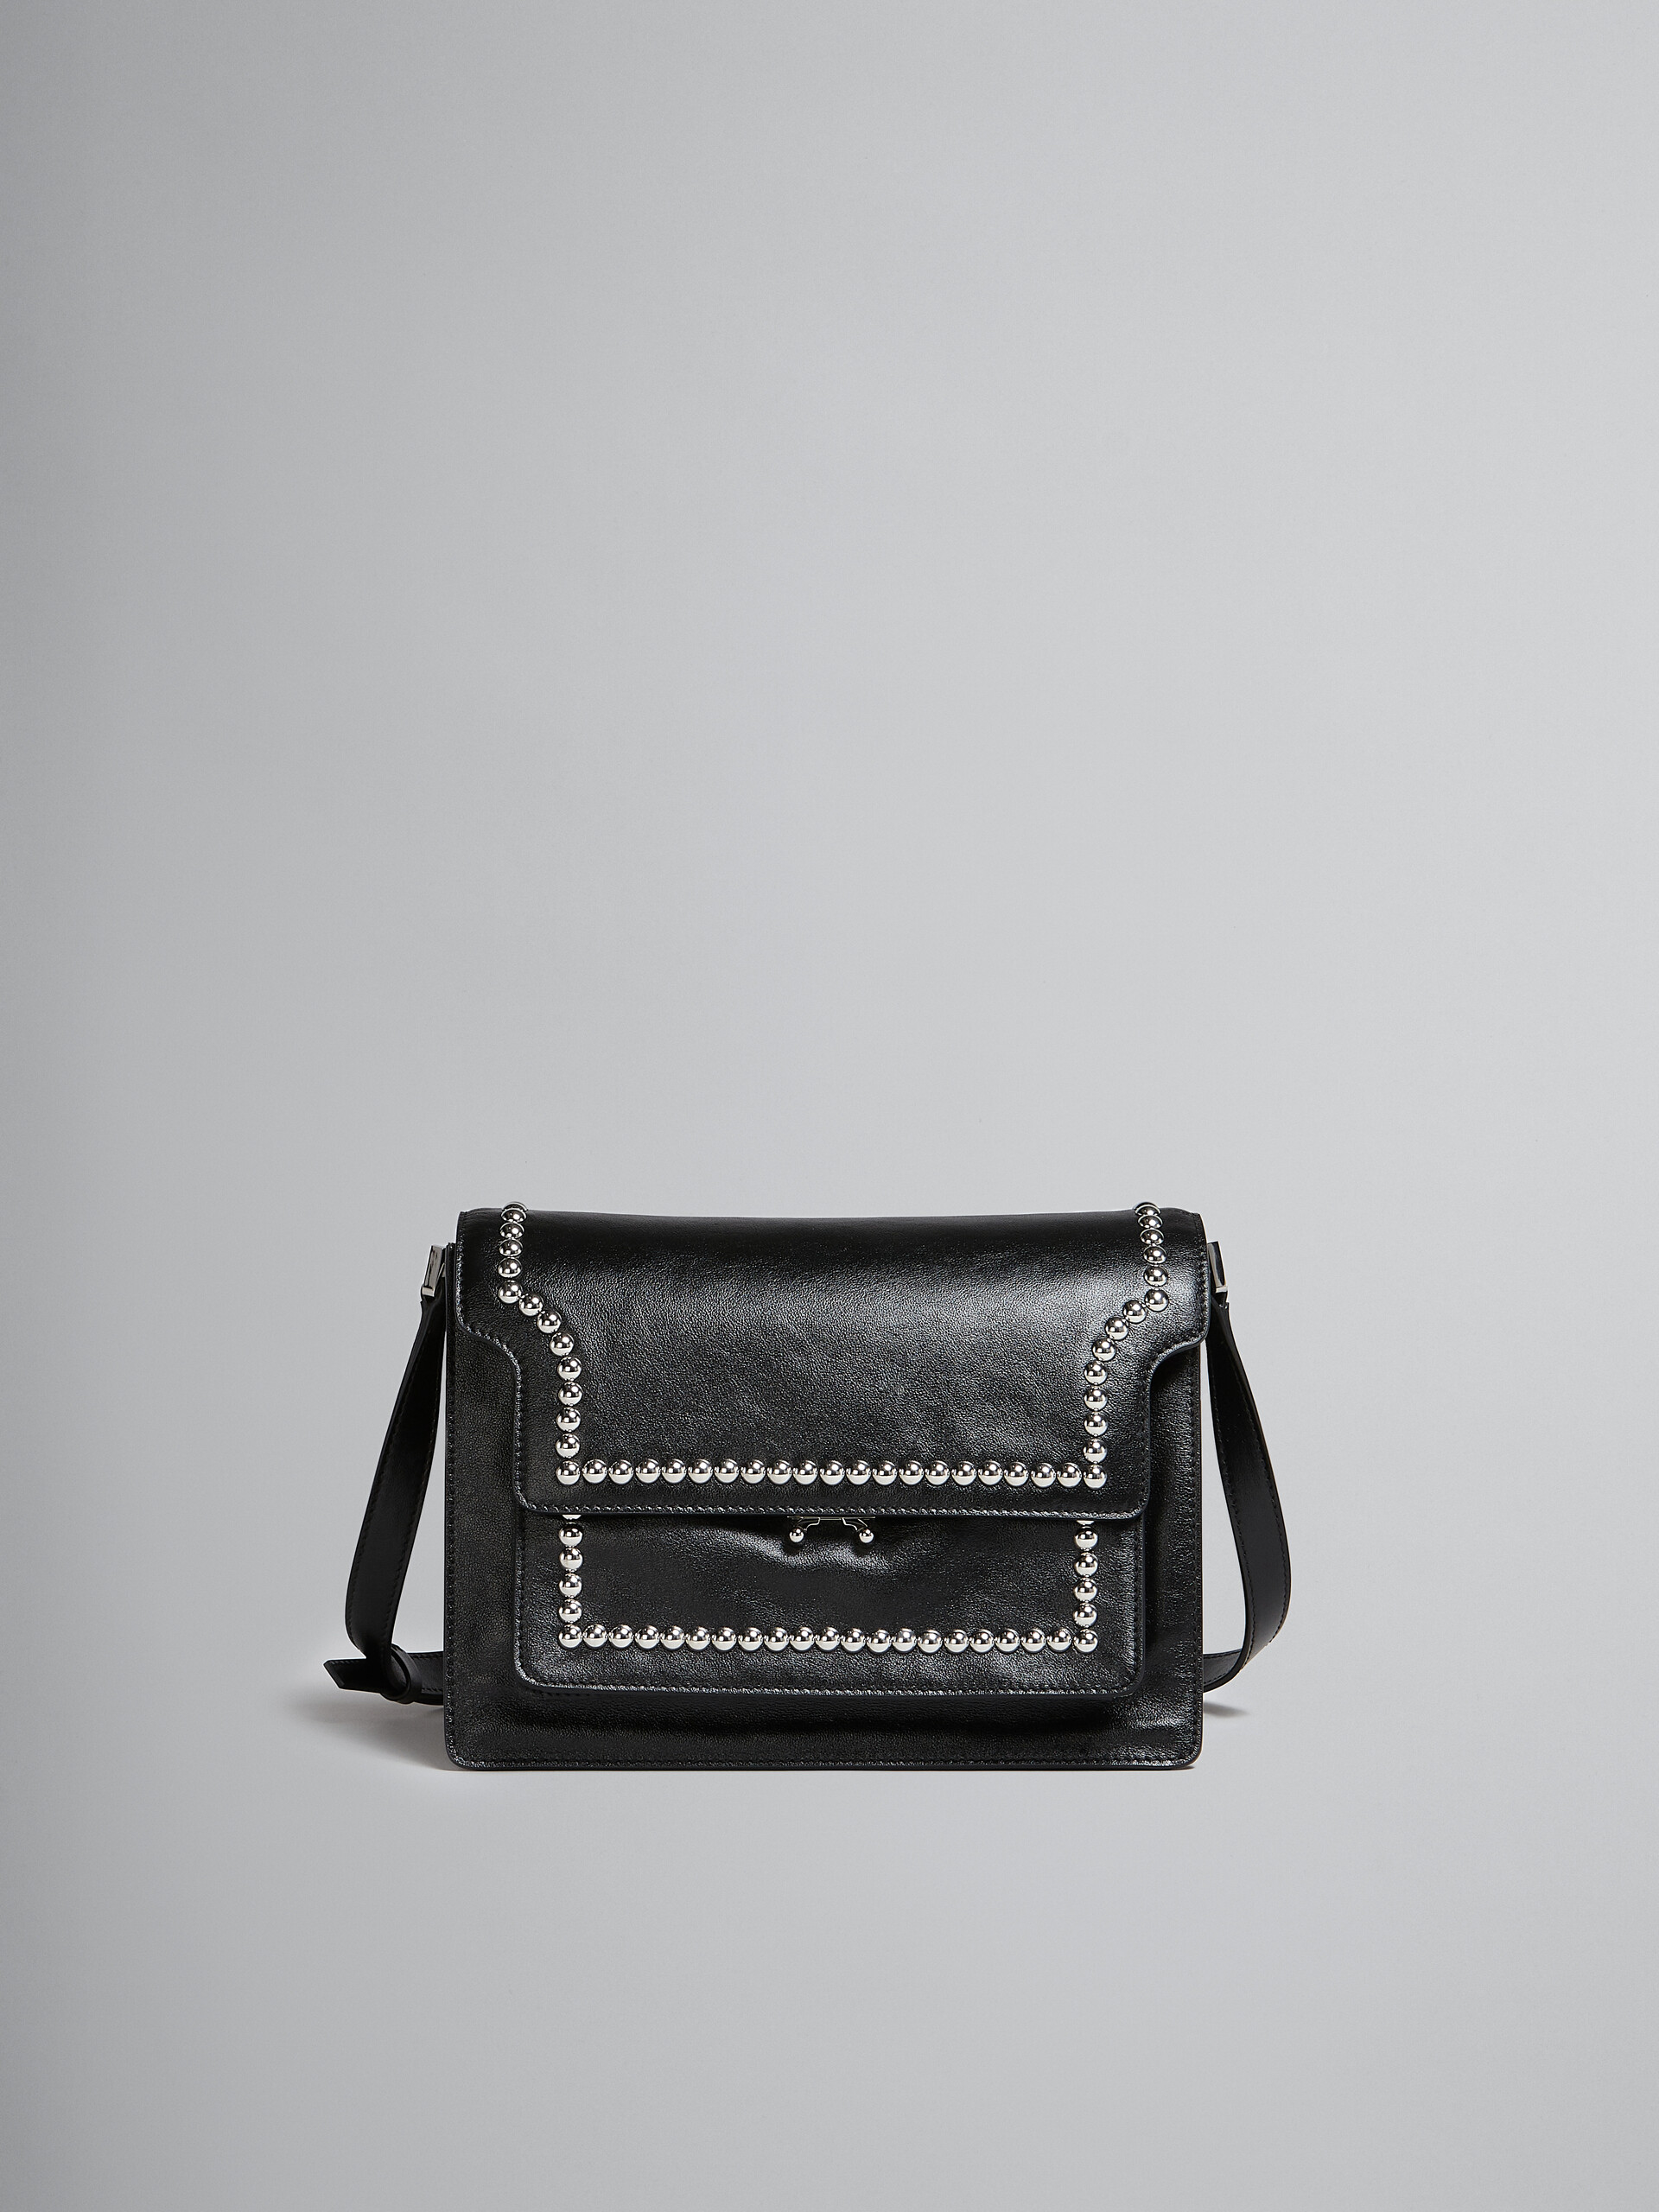 Trunk Soft Large Bag in black leather with studs - Shoulder Bag - Image 1